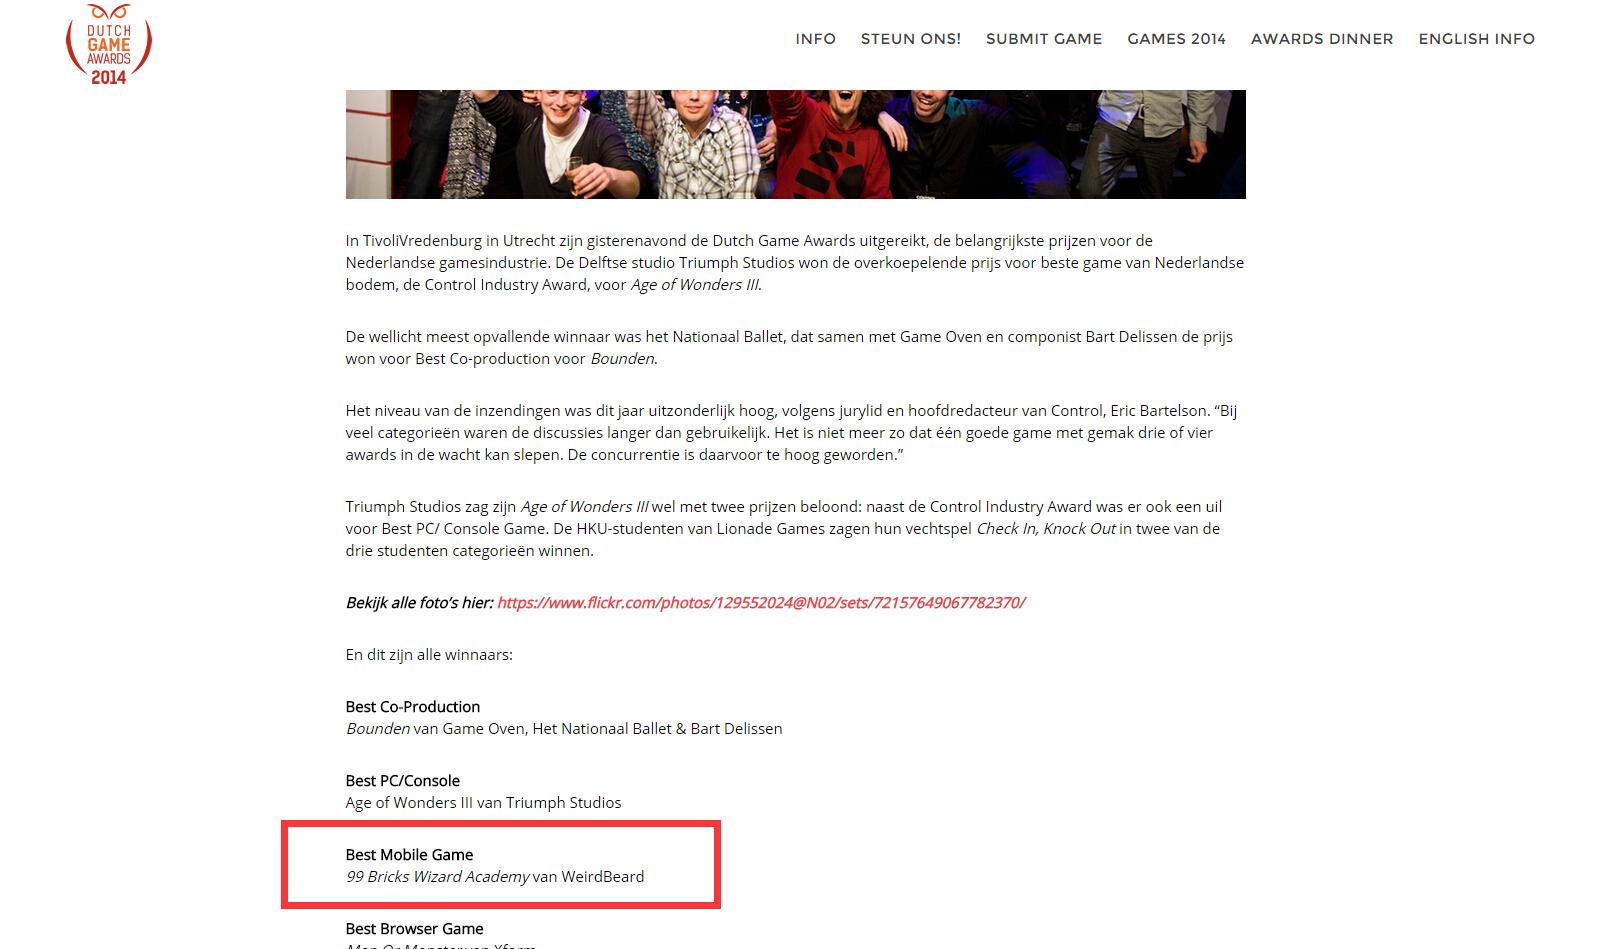 网易宣布代理荷兰王牌休闲手游《魔塔学院》 7月31日APP Store独家首发